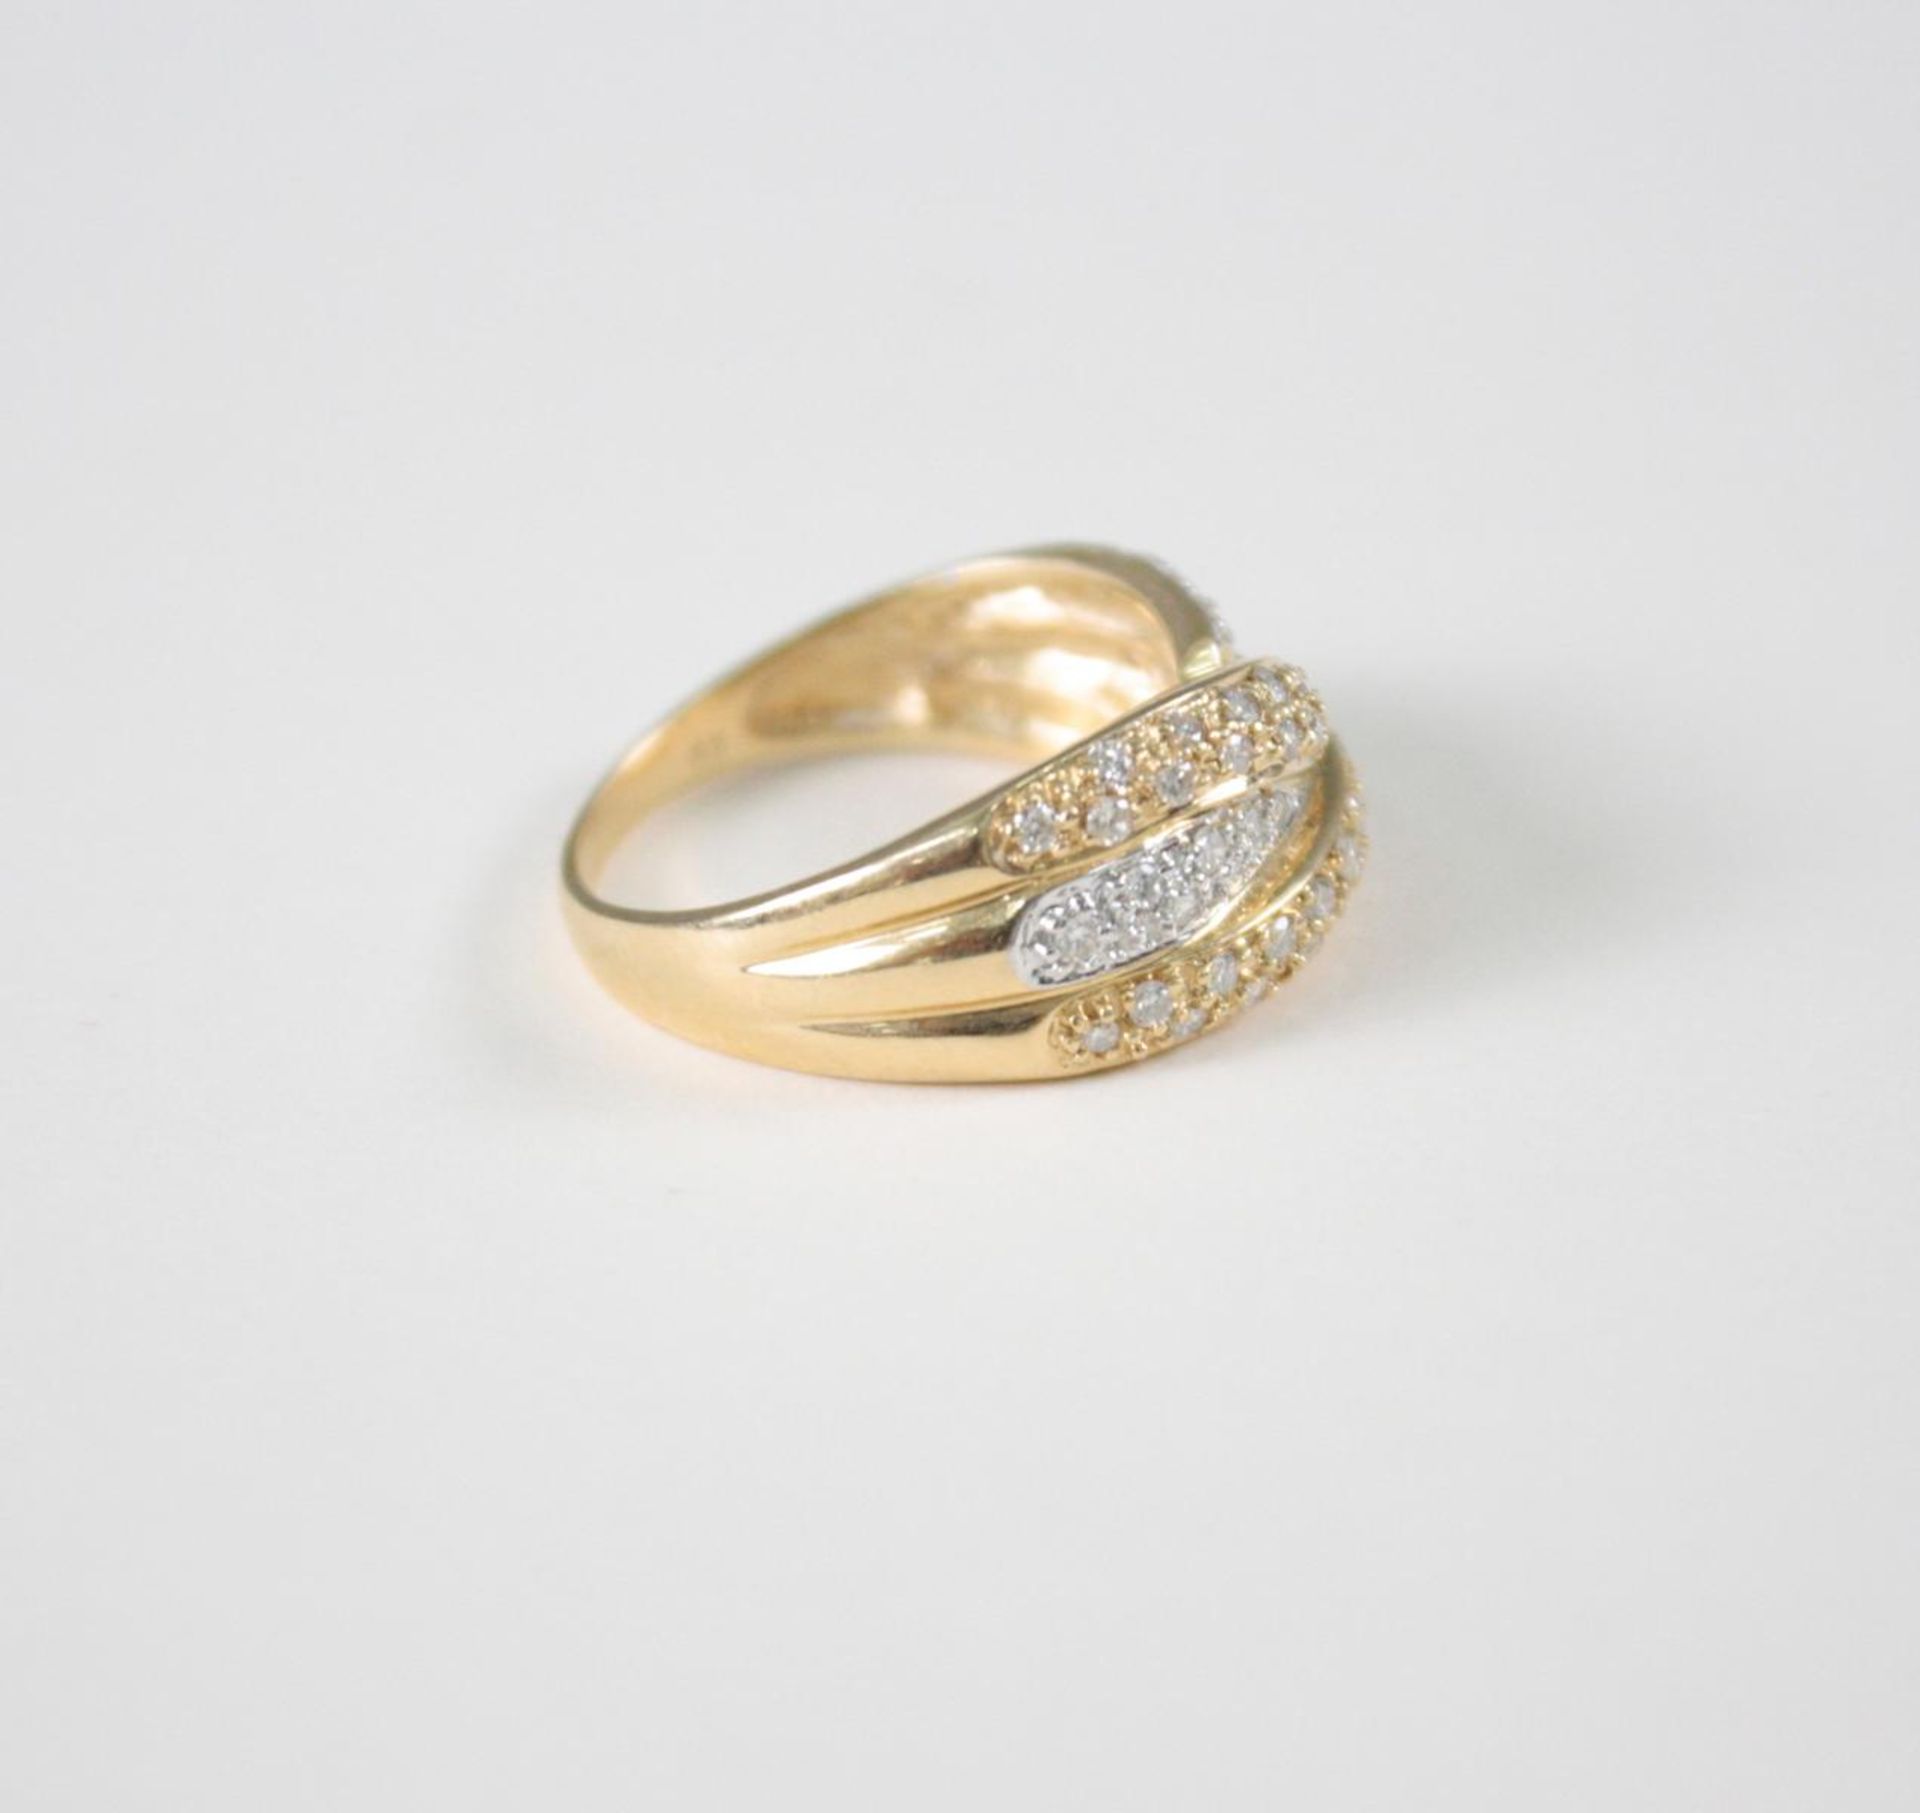 Damenring mit Diamanten, 14 Karat GelbgoldCa. 47 Diamanten von jeweils ca. 0,01 Karat, Ringgröße 57, - Bild 2 aus 3